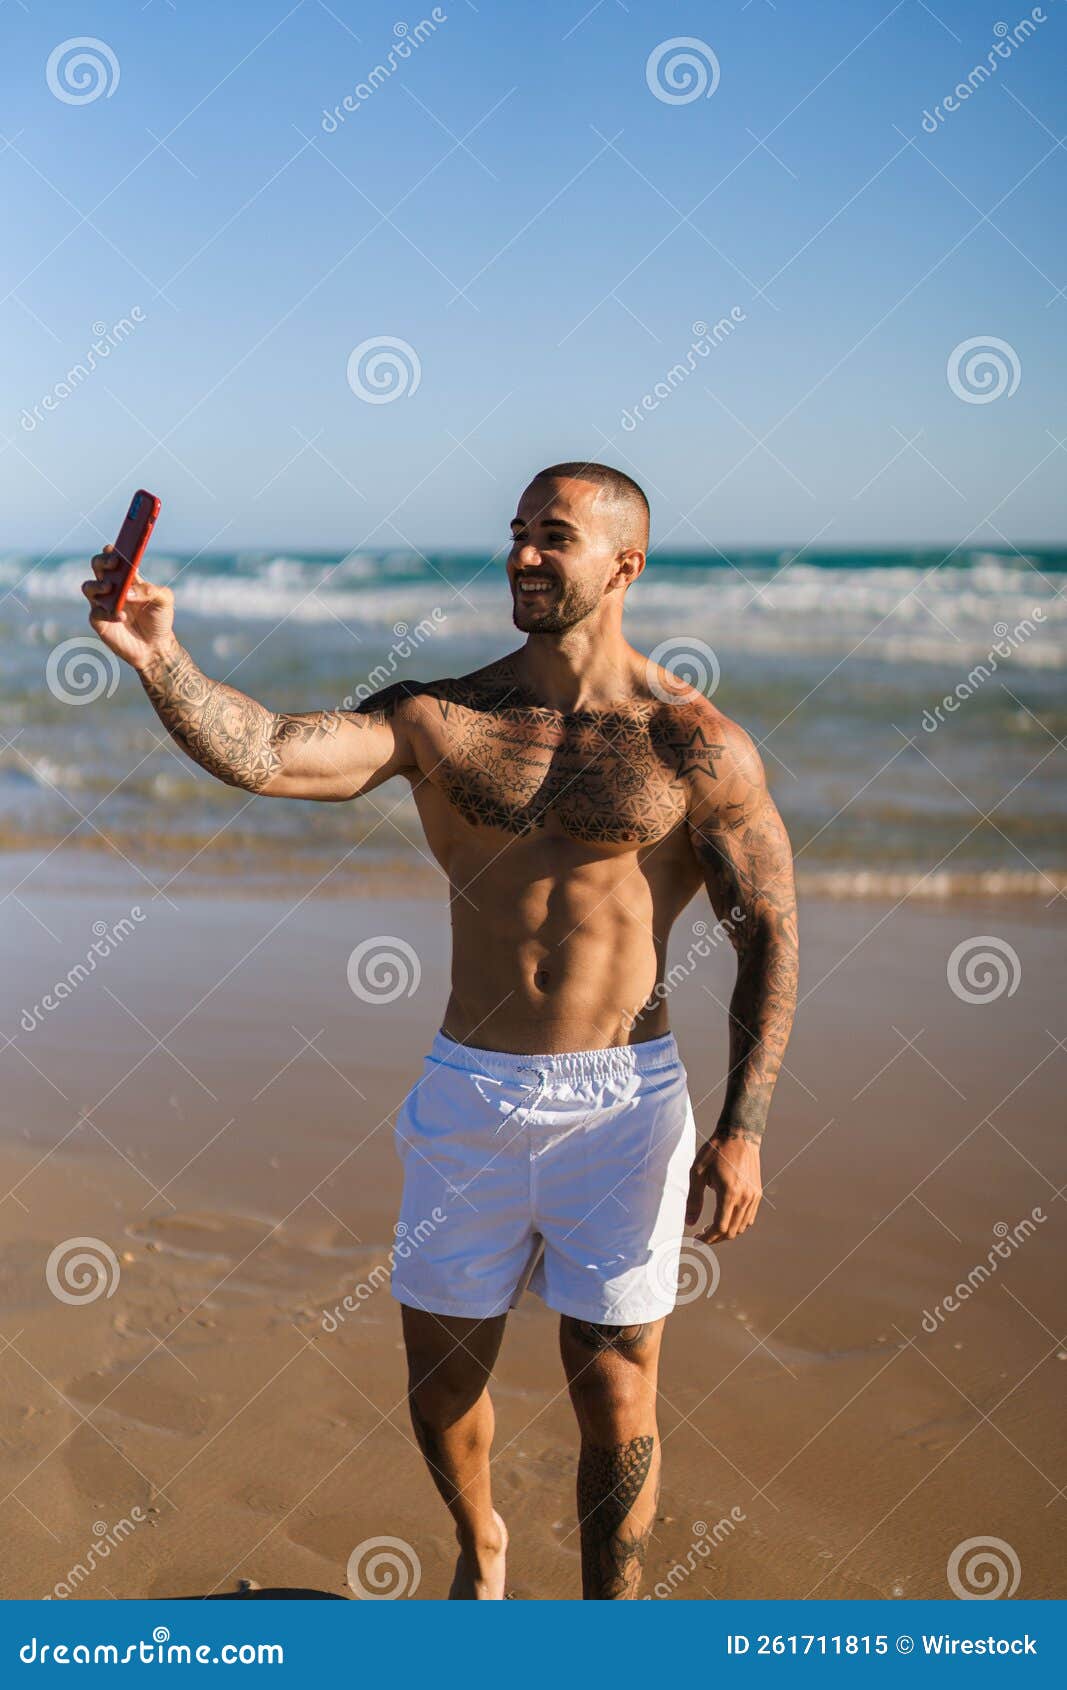 alex kourafas recommends Topless Beach Selfies